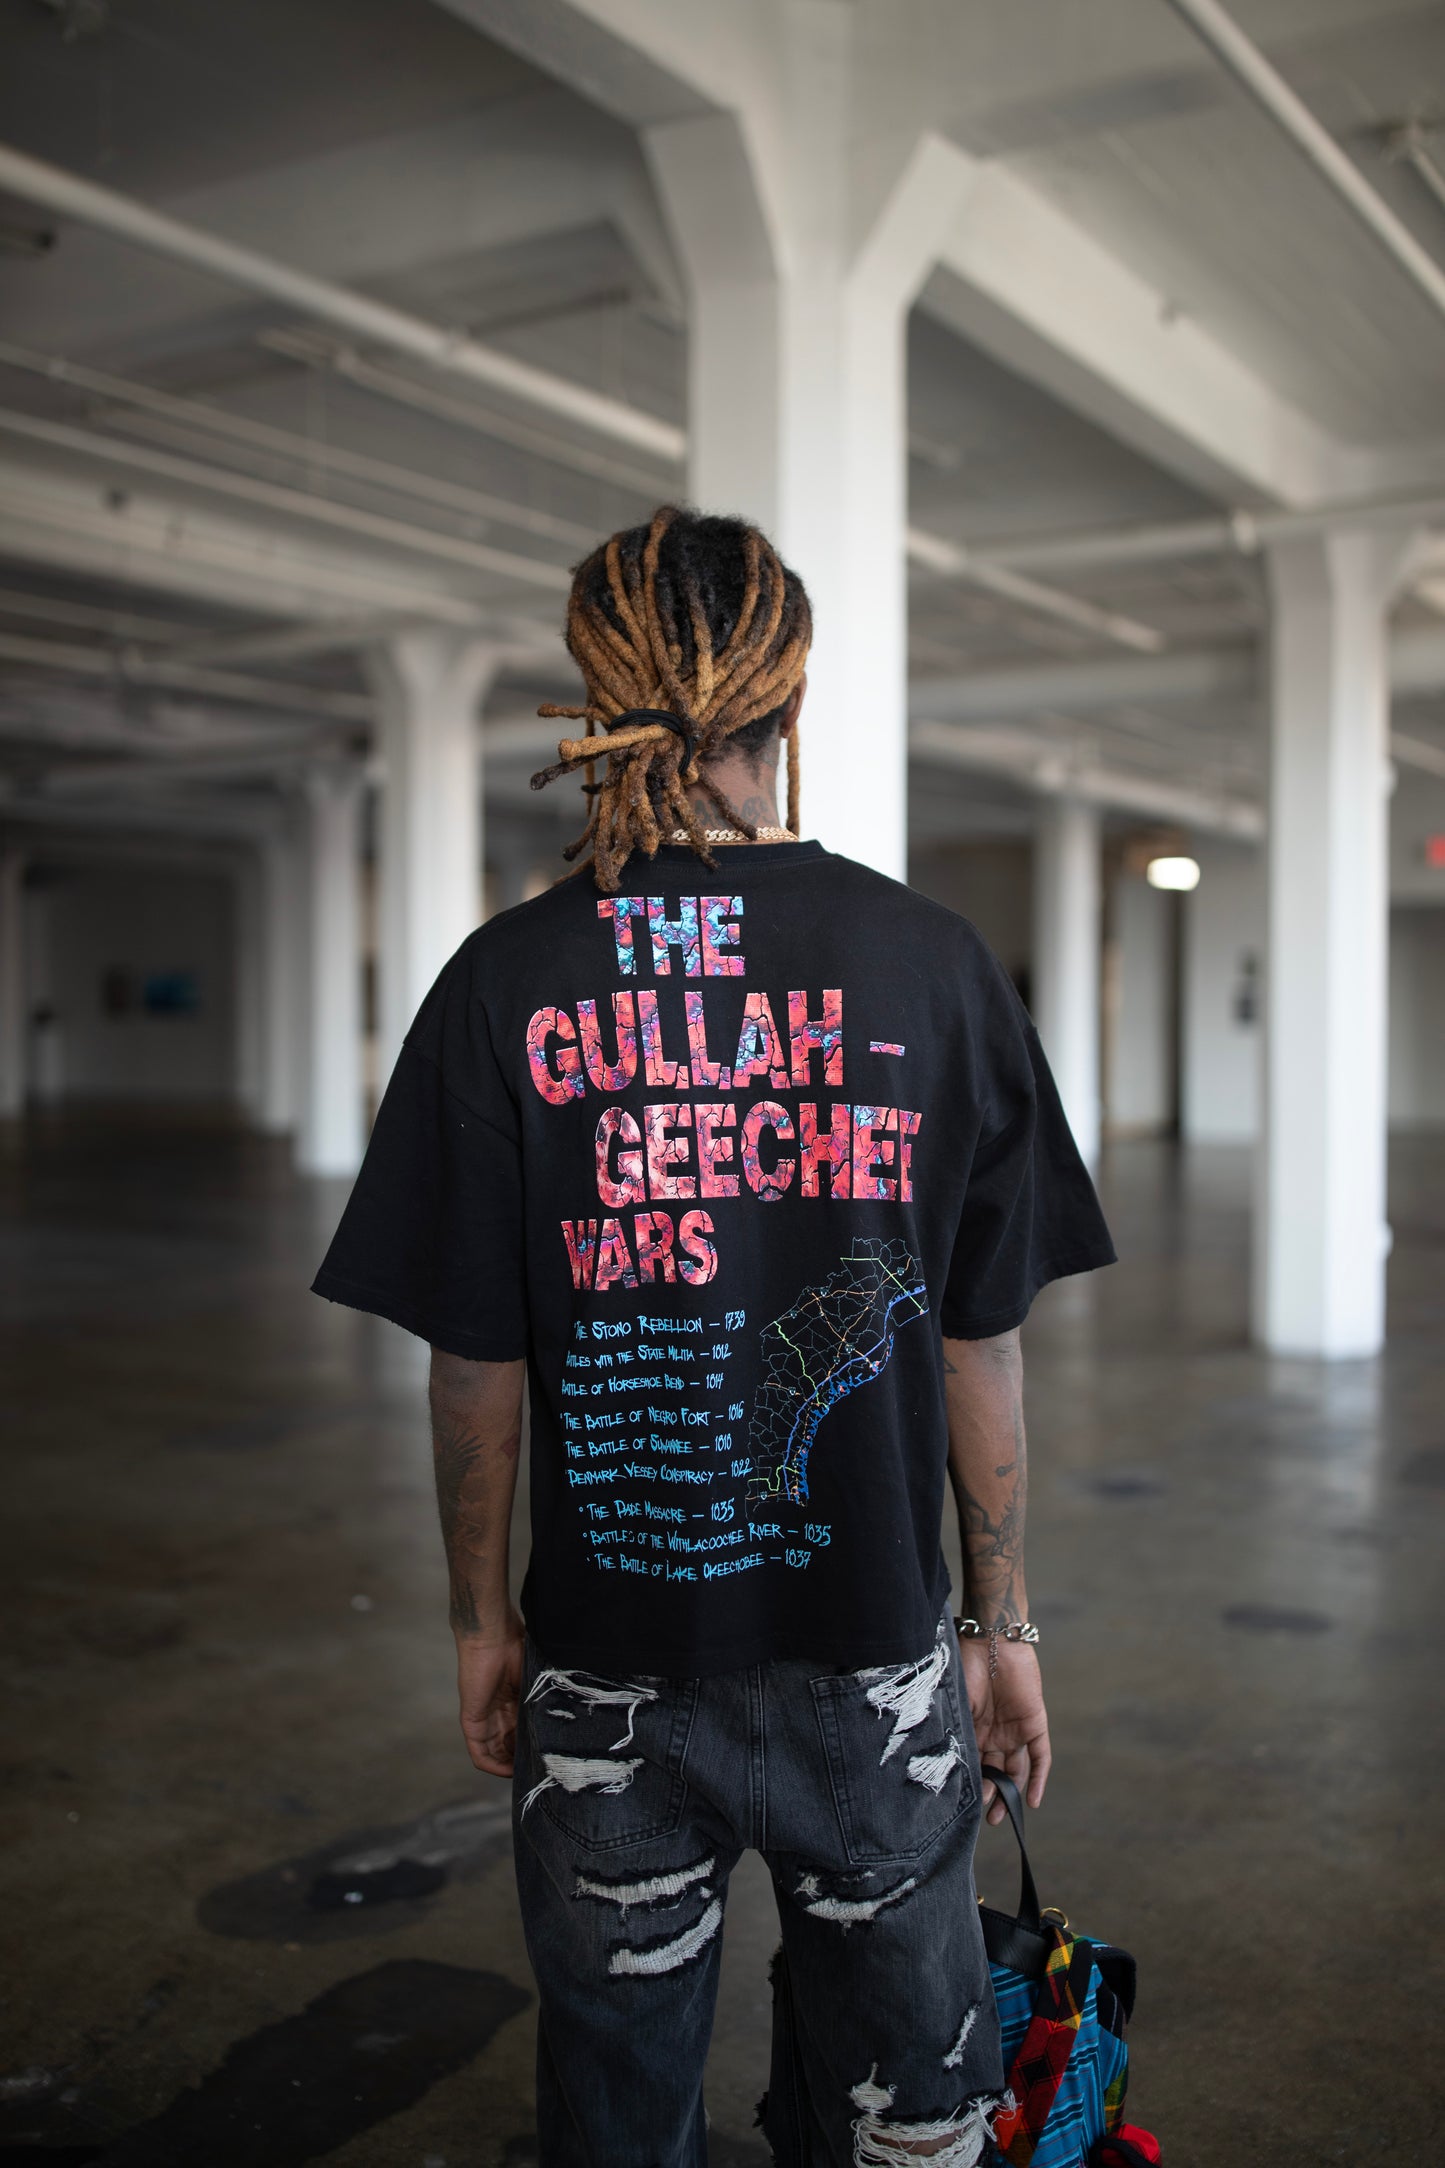 “Gullah Wars” Tee Shirt